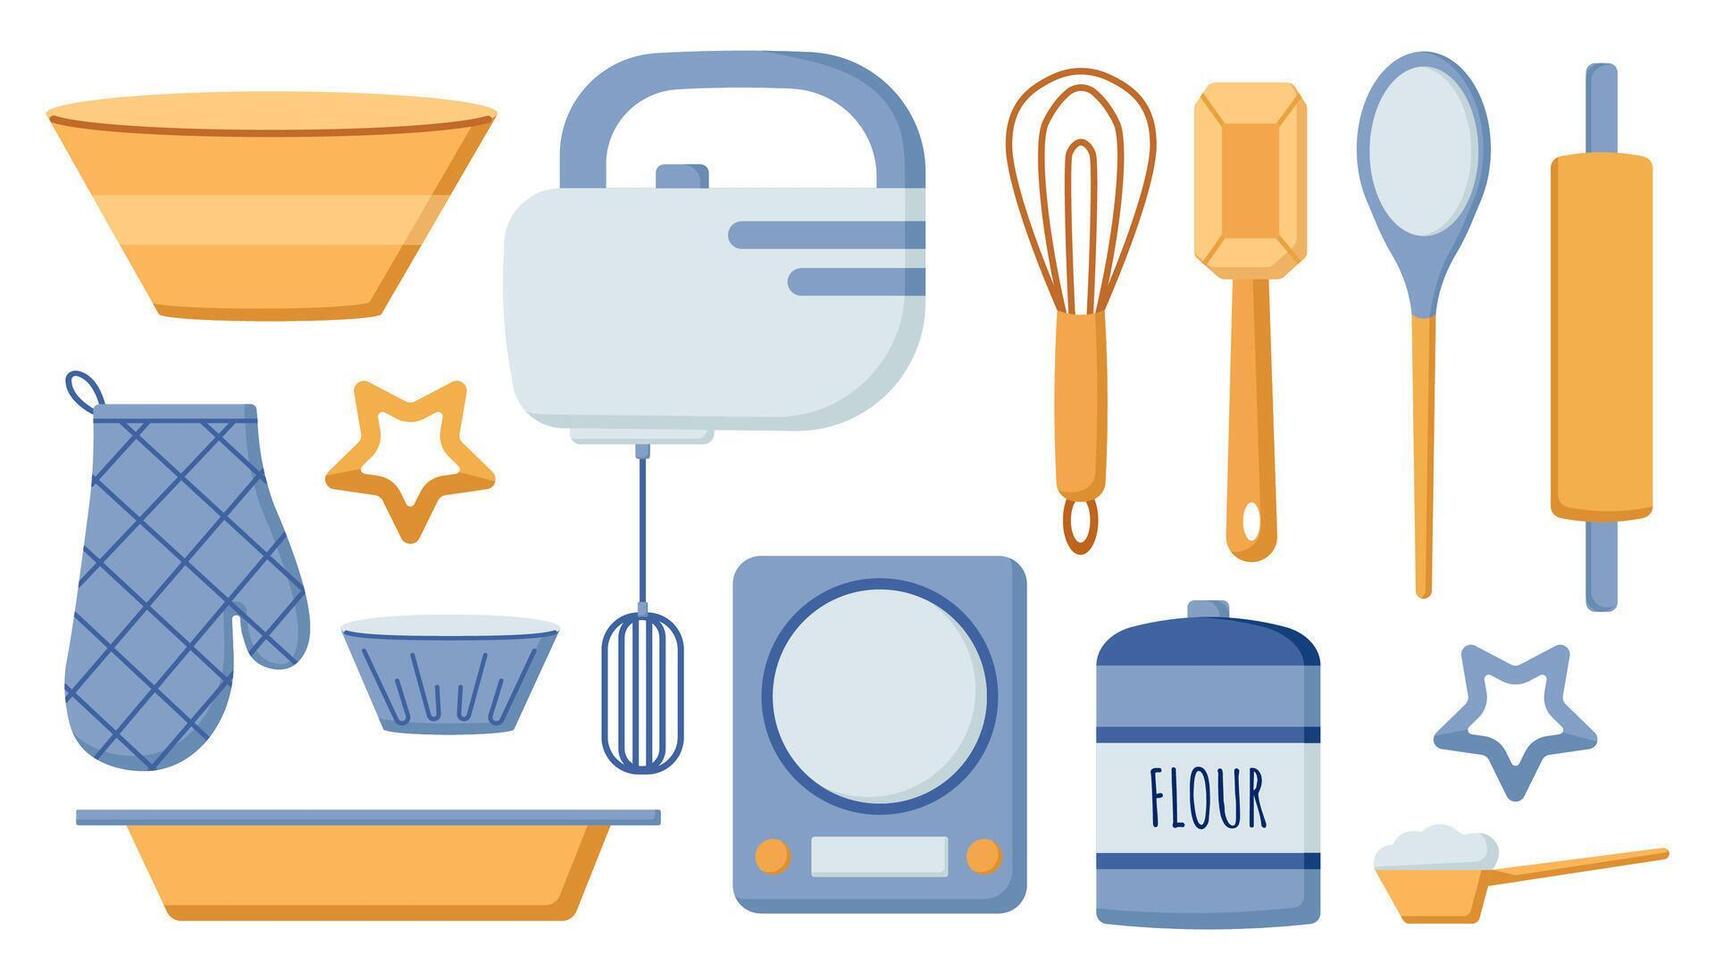 bakken gereedschap set, kookgerei, items voor Koken, keuken werktuig, mixer, schaal, handschoen, meel, bakken dienblad, rollend pin, garde, spatel, vector illustratie